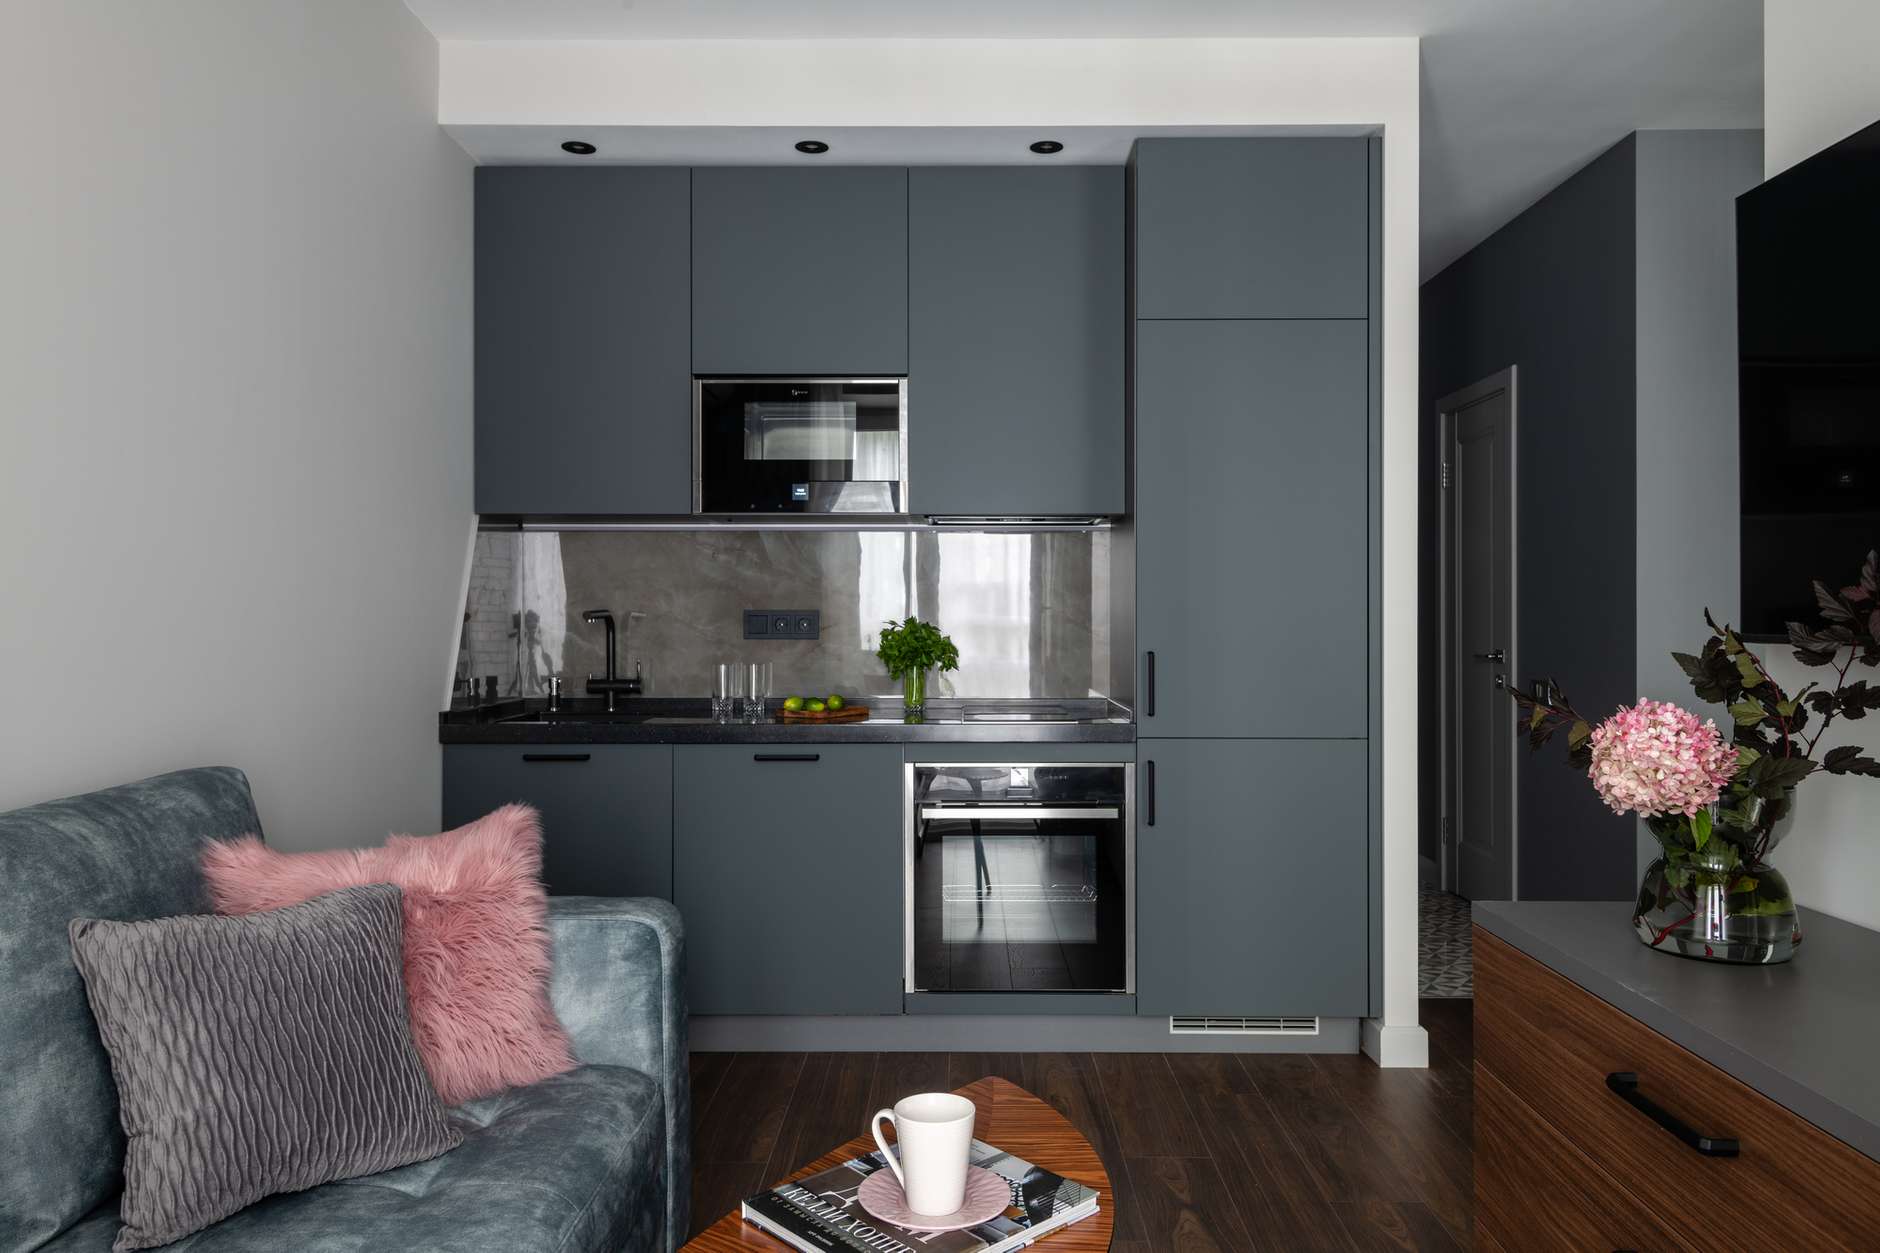 Vì căn hộ có diện tích rất nhỏ, chưa đến 40m² nên phòng bếp thiết kế kiểu chữ I là giải pháp phù hợp hơn cả, vừa tiết kiệm không gian vừa đảm bảo đủ tiện nghi. 